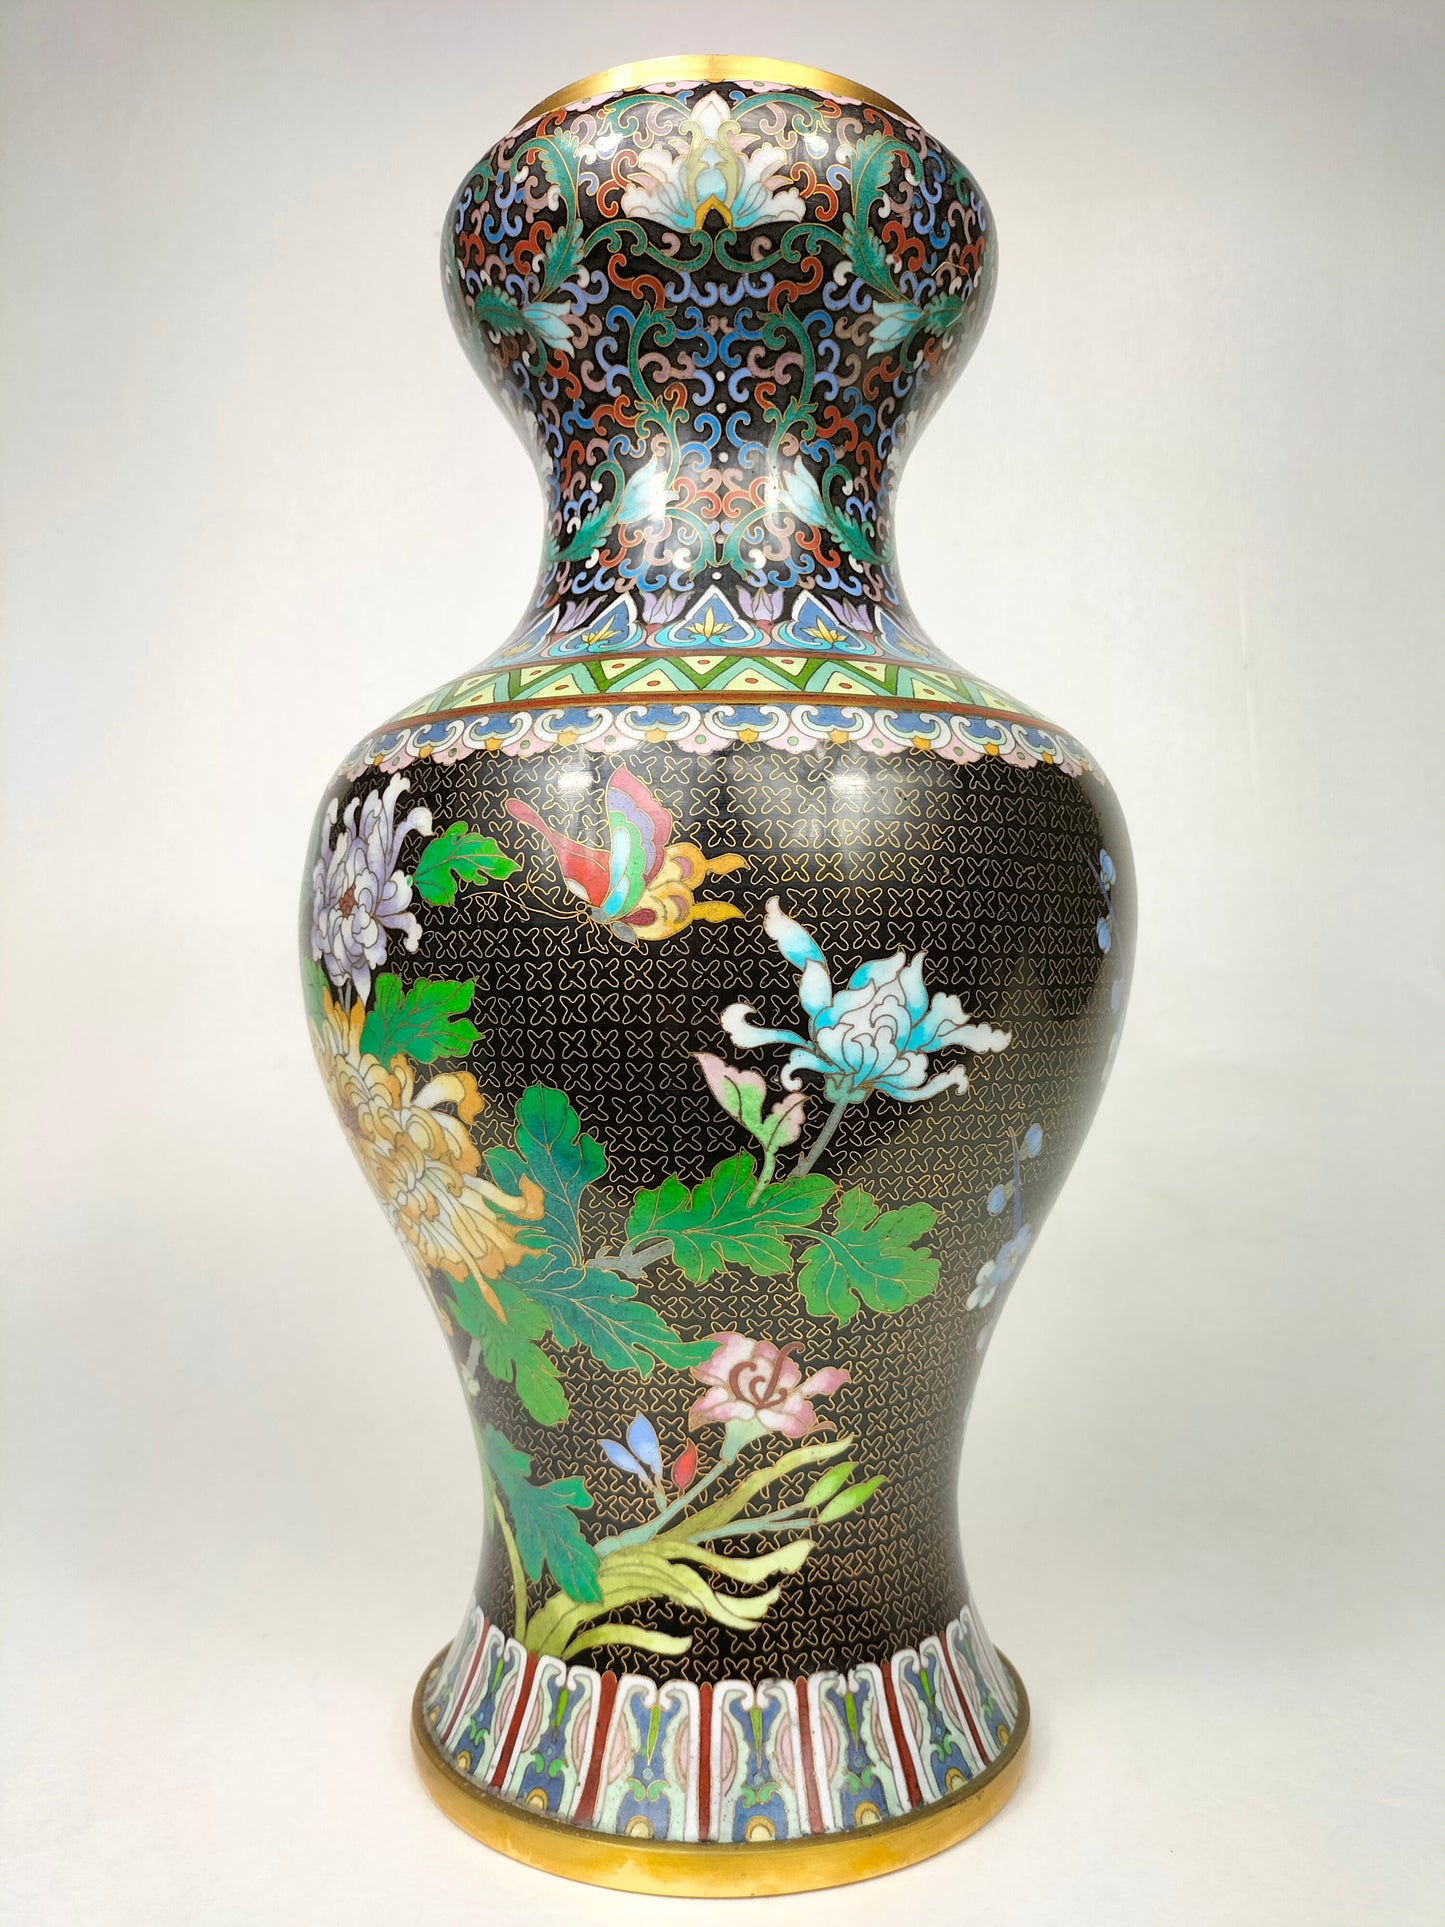 مزهرية مصوغة ​​بطريقة صينية عتيقة مزينة بالزهور والفراشات // منتصف القرن العشرين